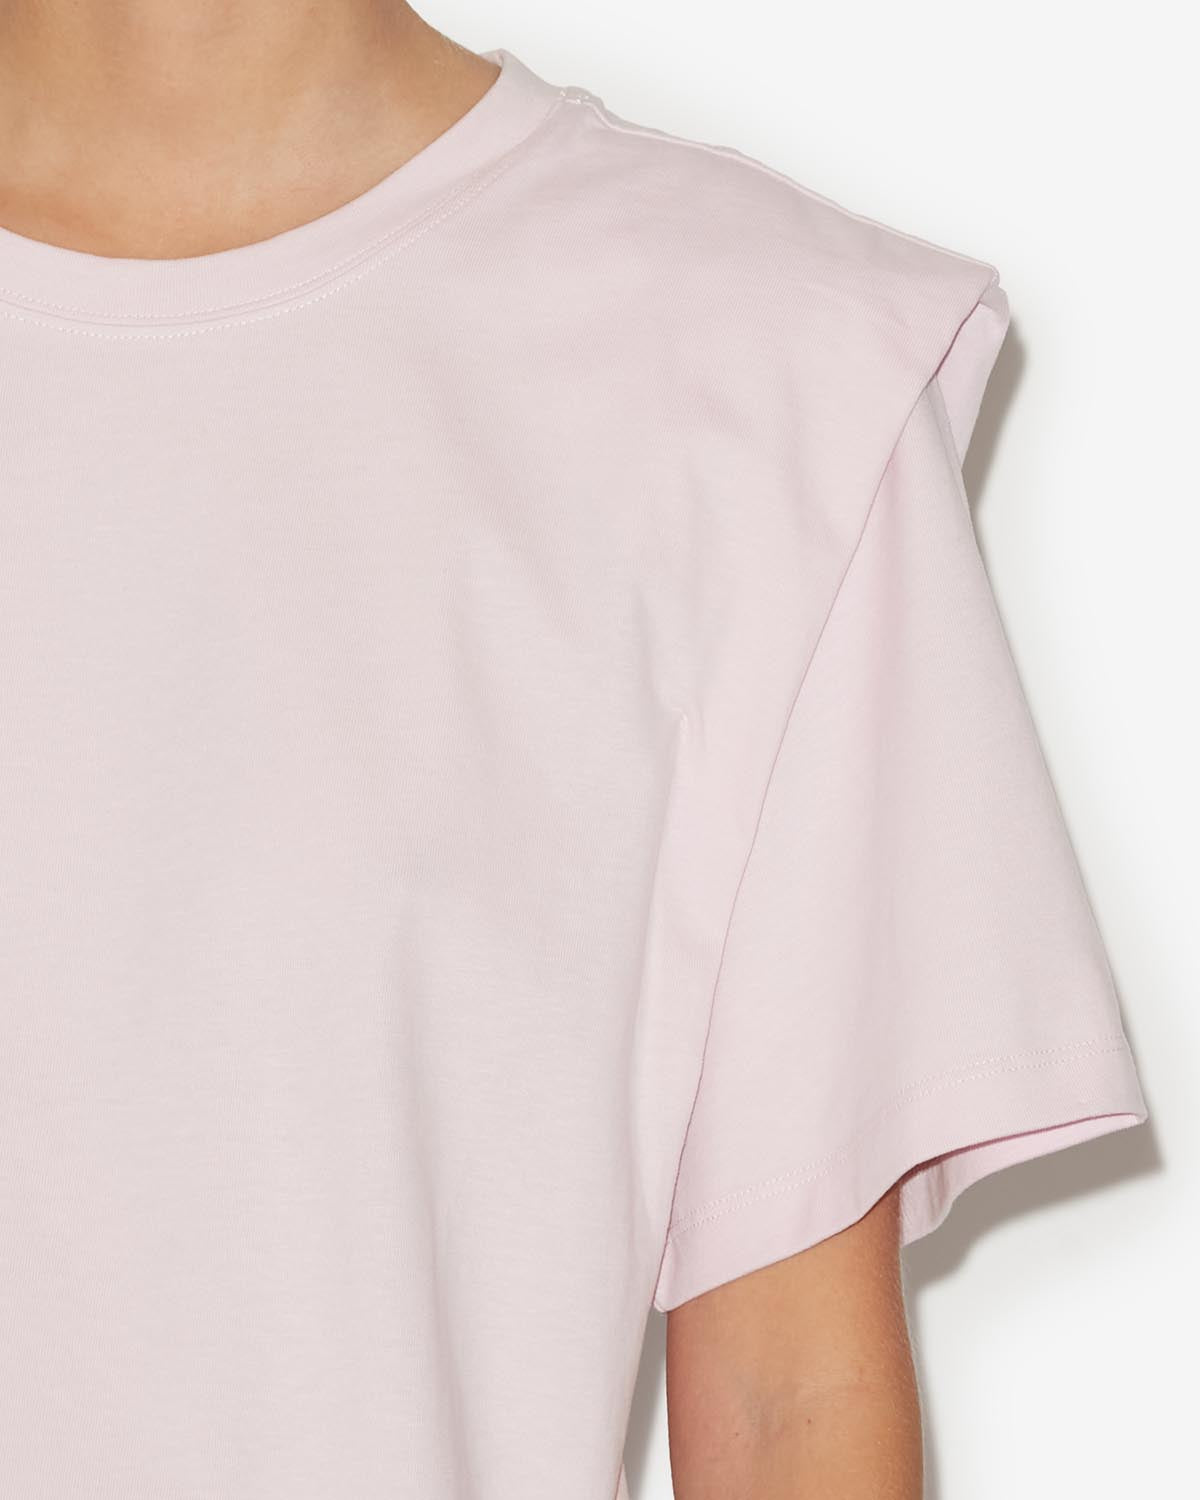 Zelitos tee shirt Woman Light pink 3